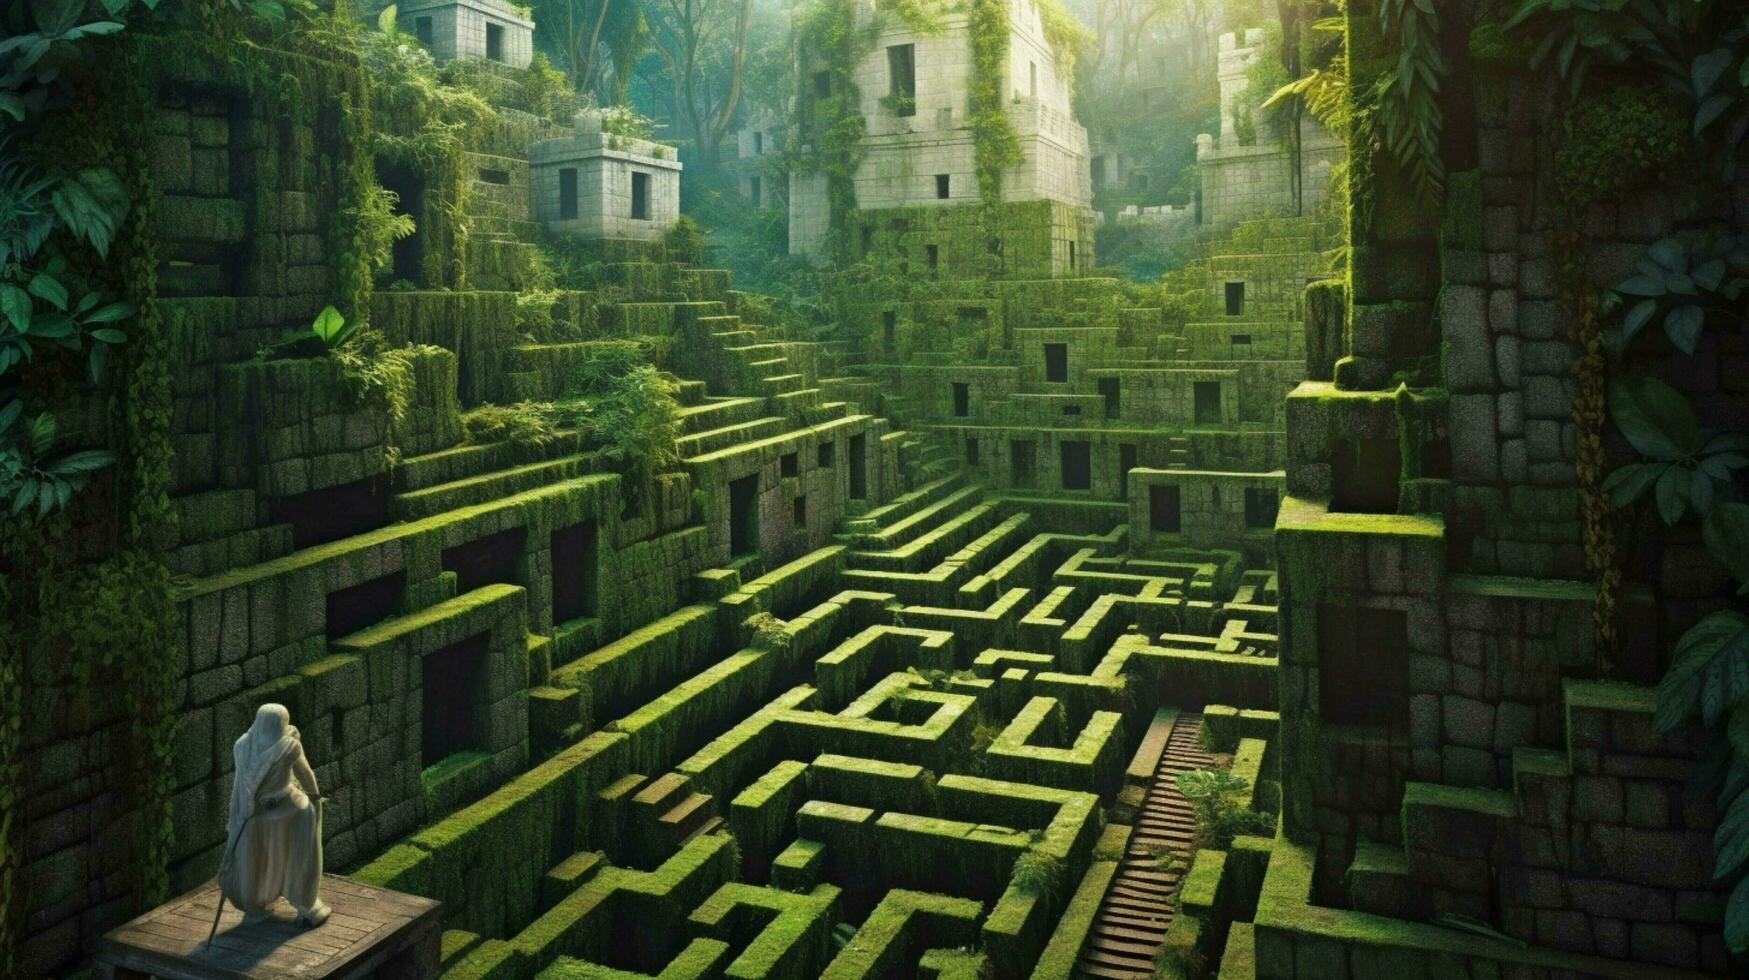 un' fantasia labirinto nel giungla alto muri di calcestruzzo foto